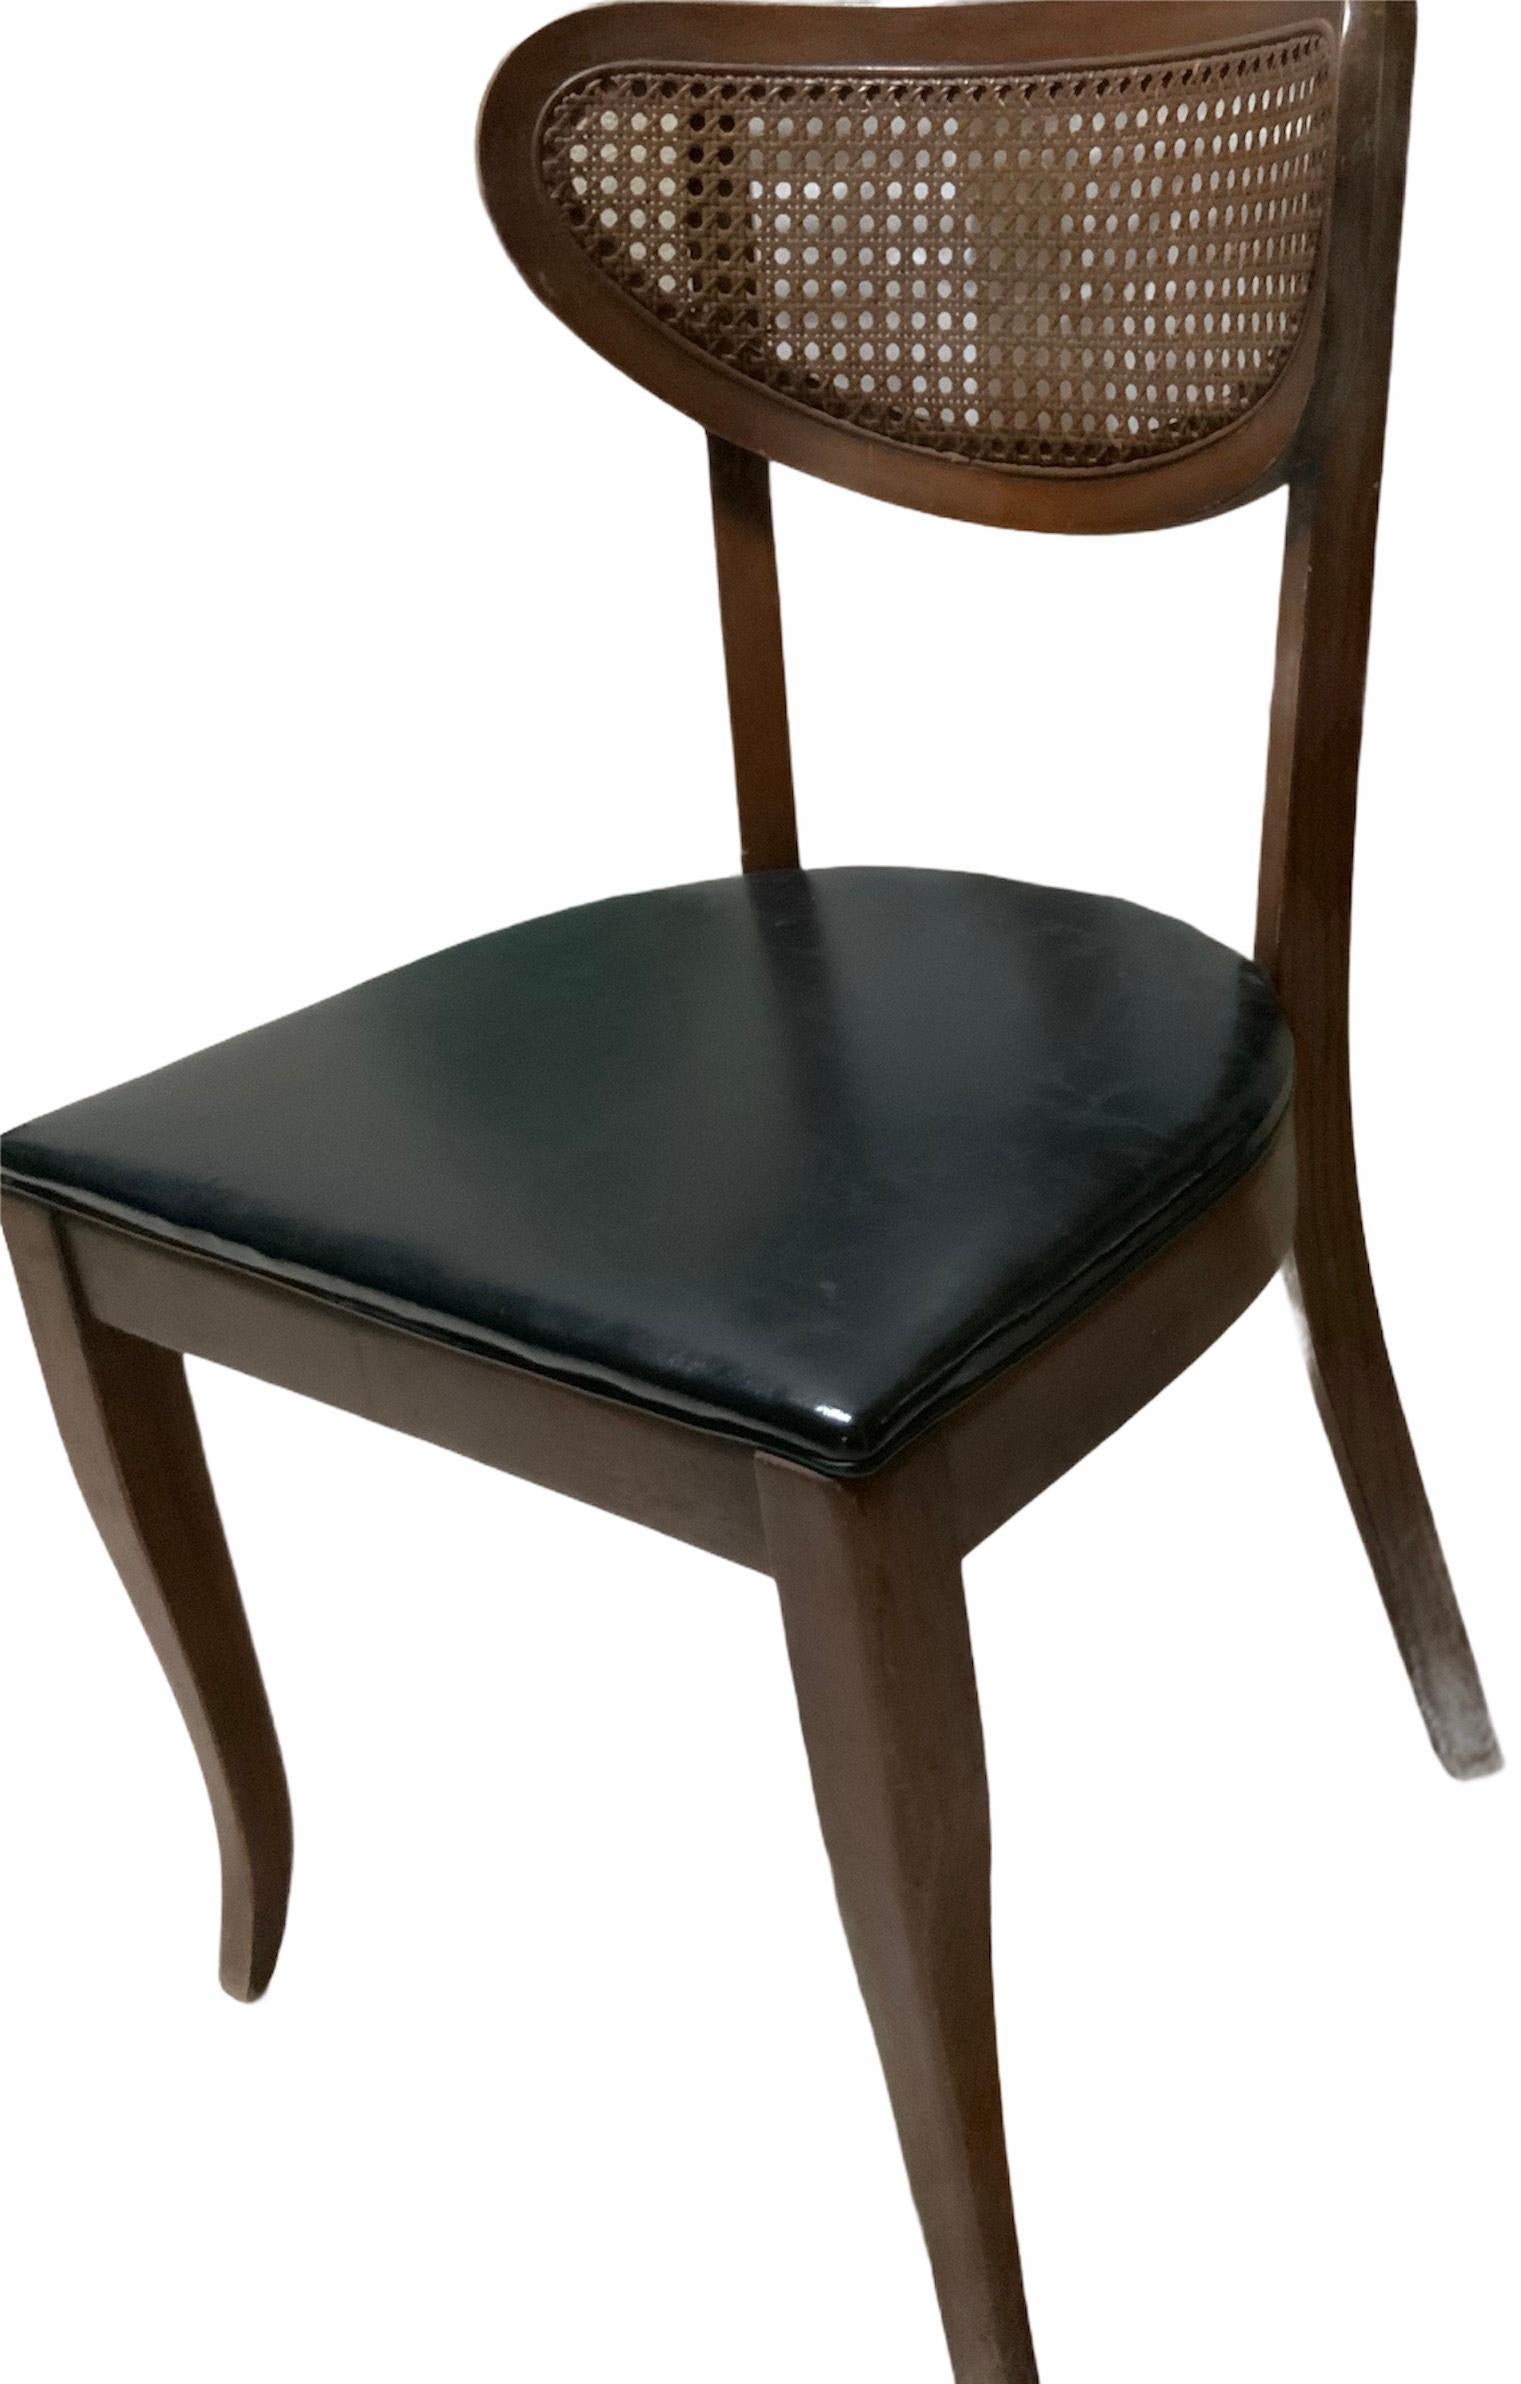 Il s'agit d'une chaise en bois massif de style danois. Son dos est de forme elliptique et fait d'un filet canné. L'assise est large, en forme de 